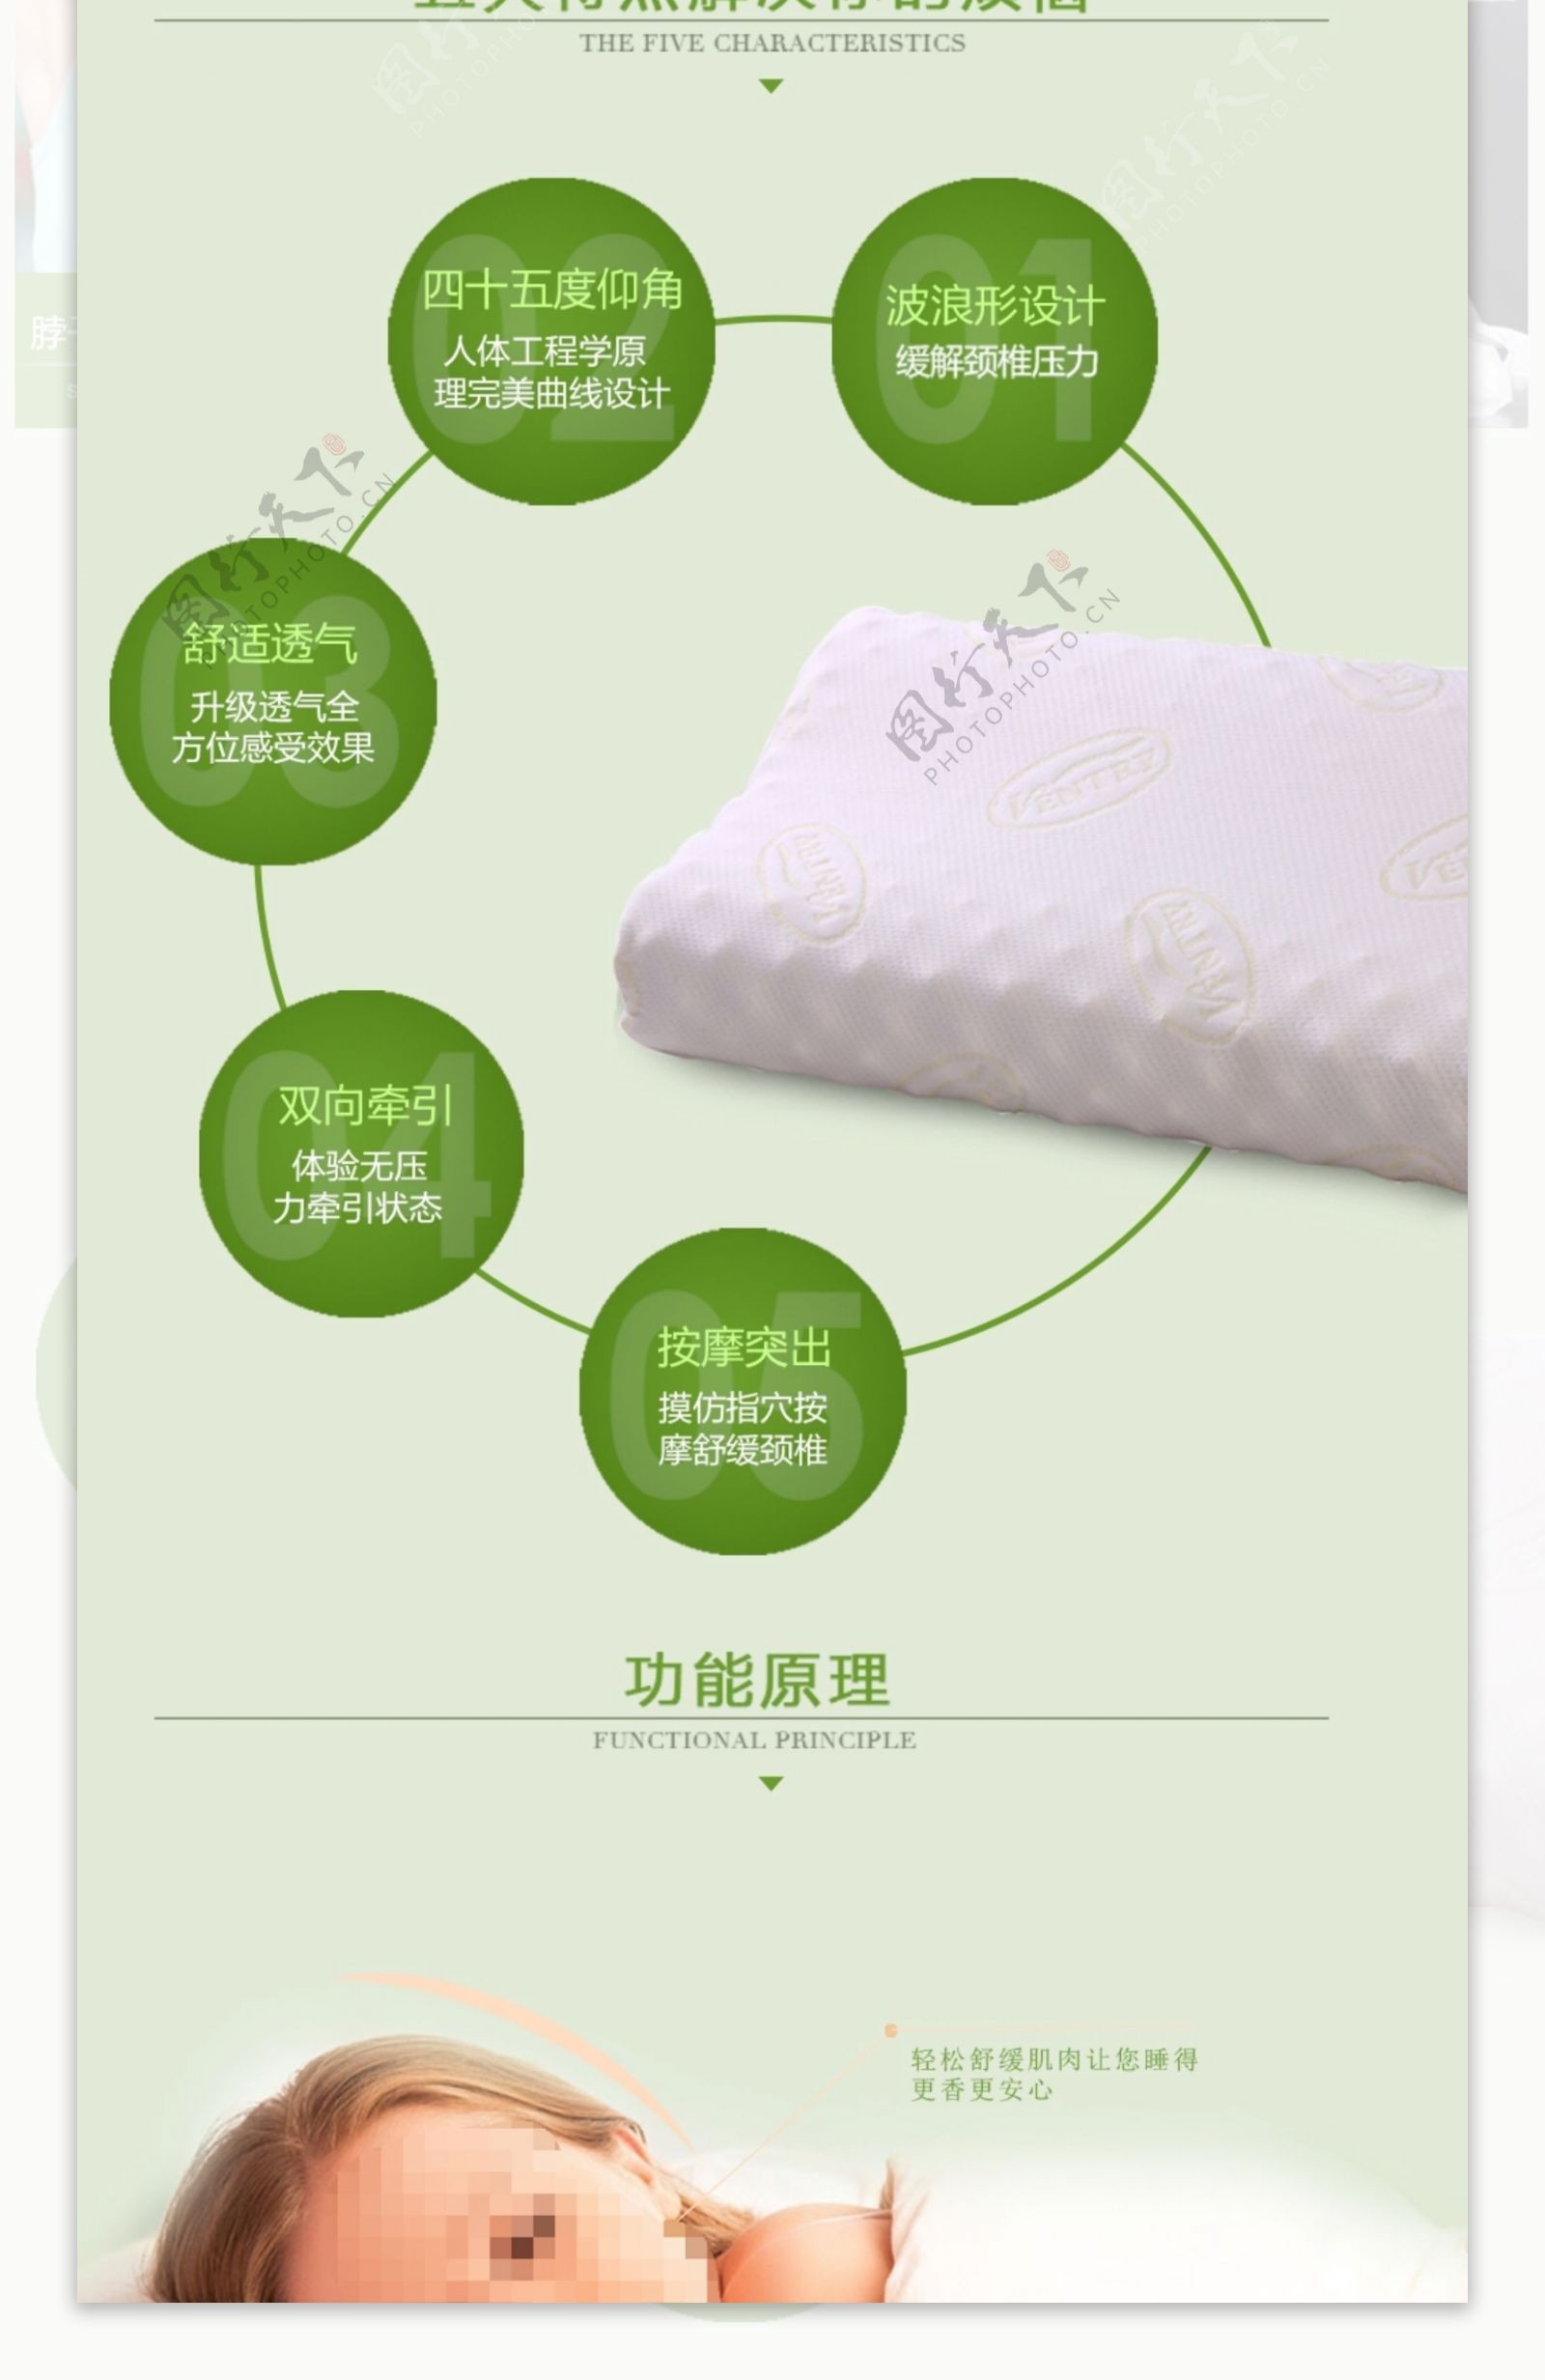 电商淘宝绿色清新环保乳胶枕日用品详情页模板